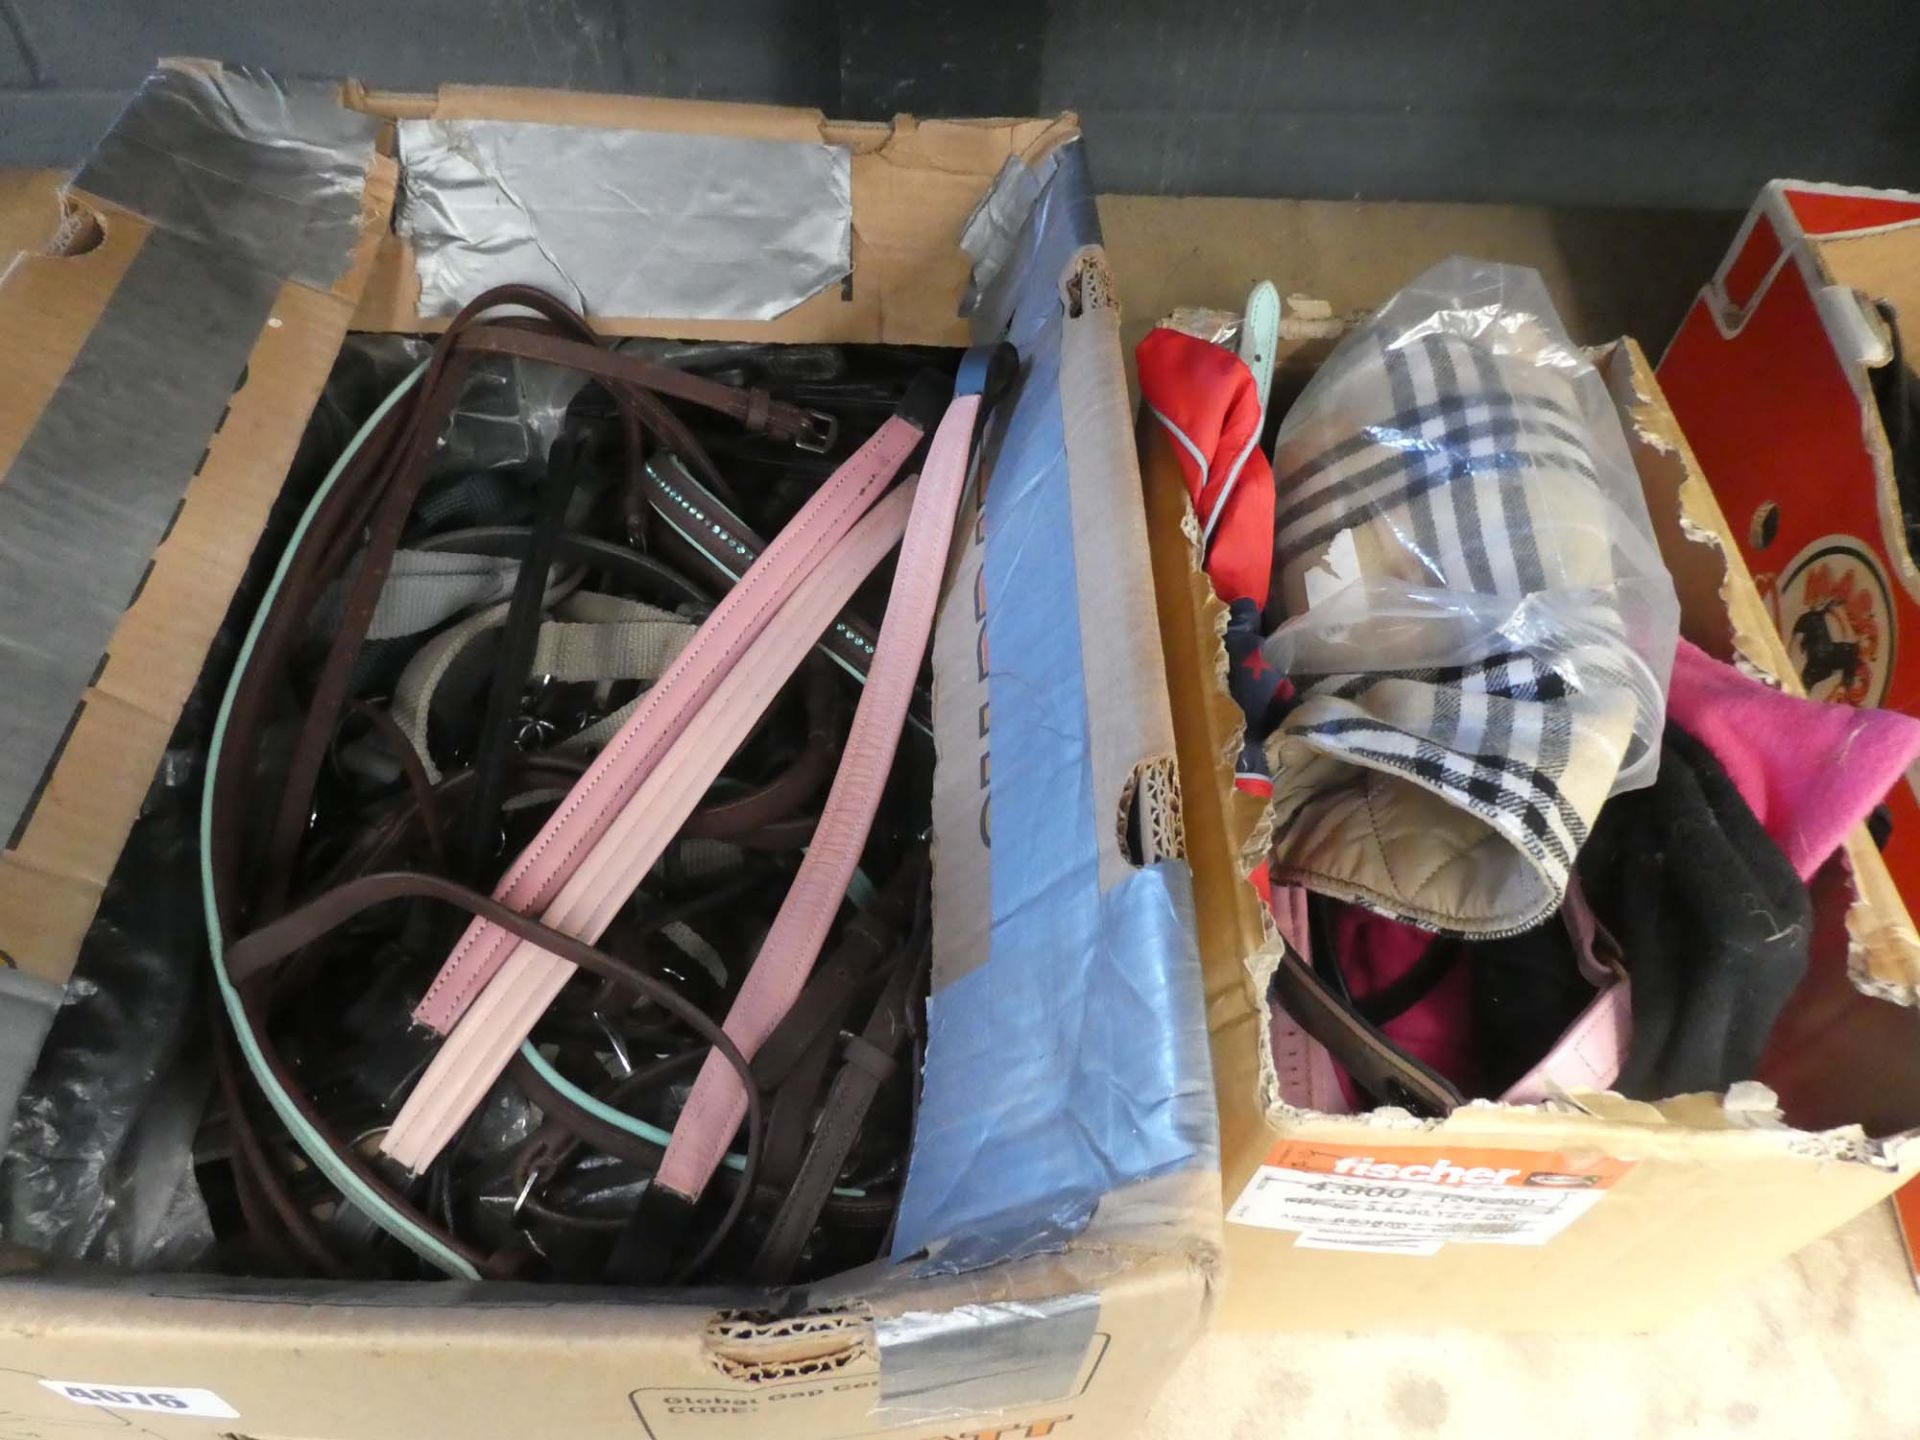 1 box of dog harnesses, horse tack and coats, 1 box of horse tack